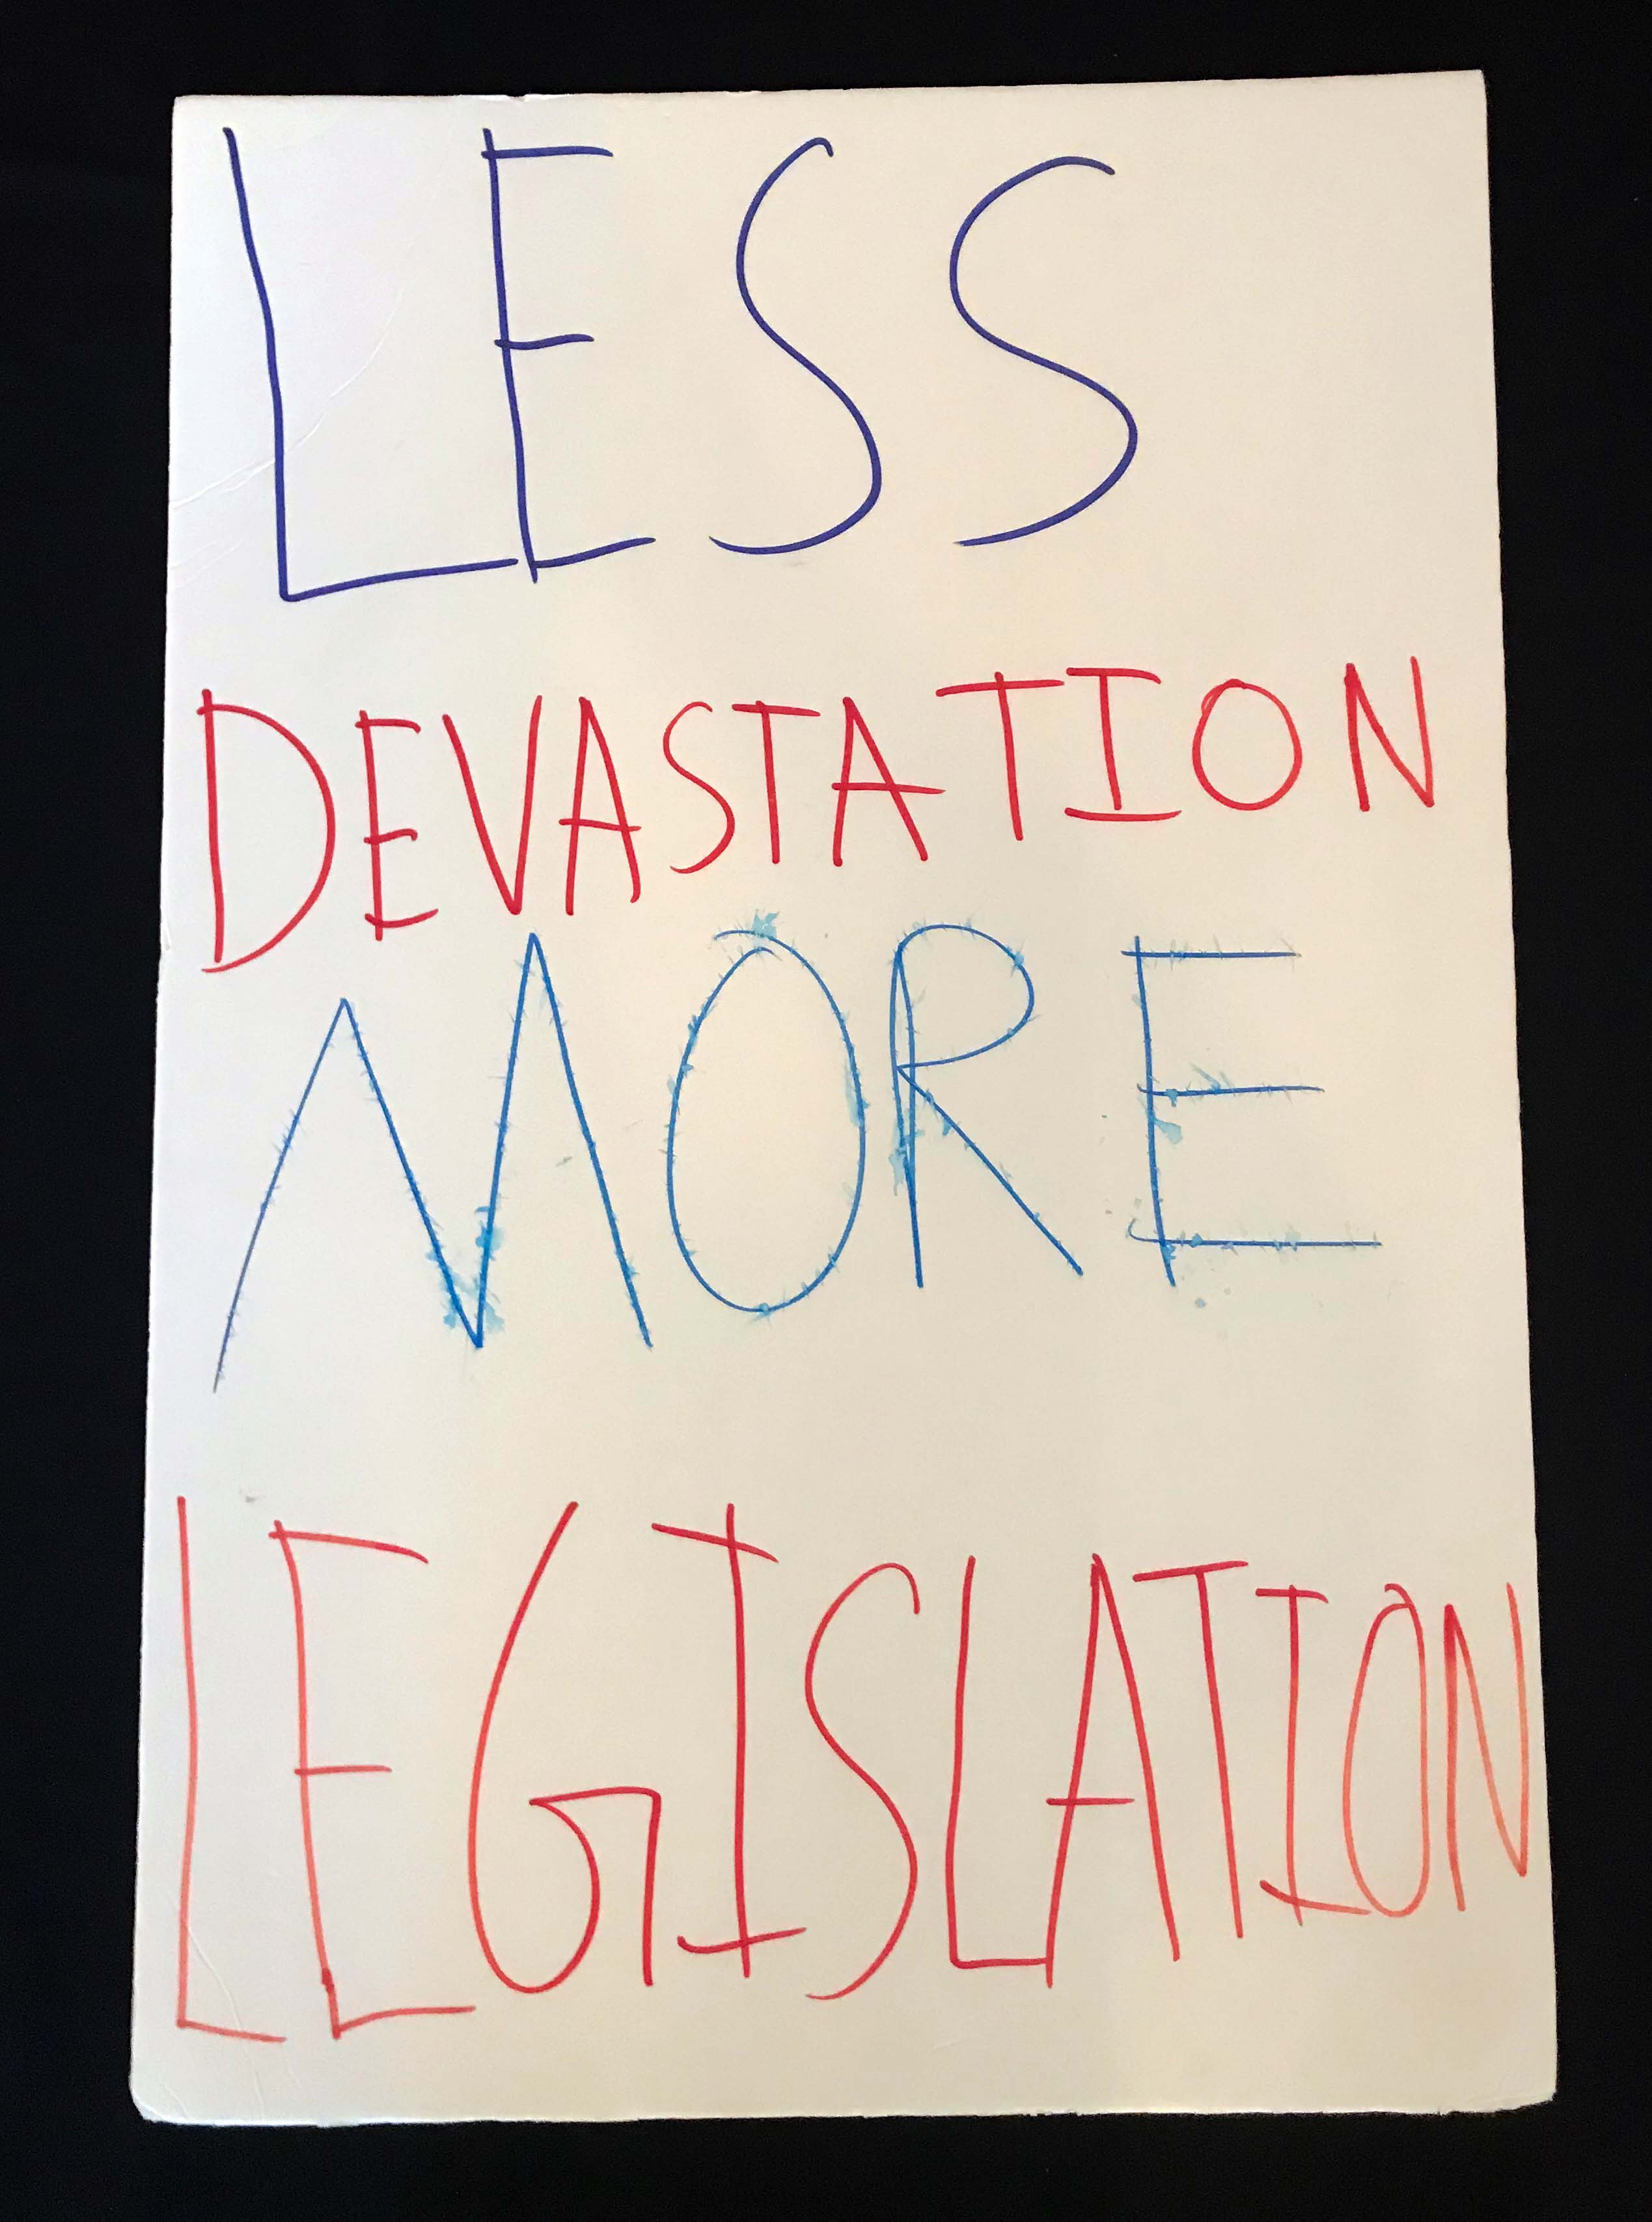 Charlotte March for Our Lives, 2018. Sign reads: "Less devastation, more legislation"